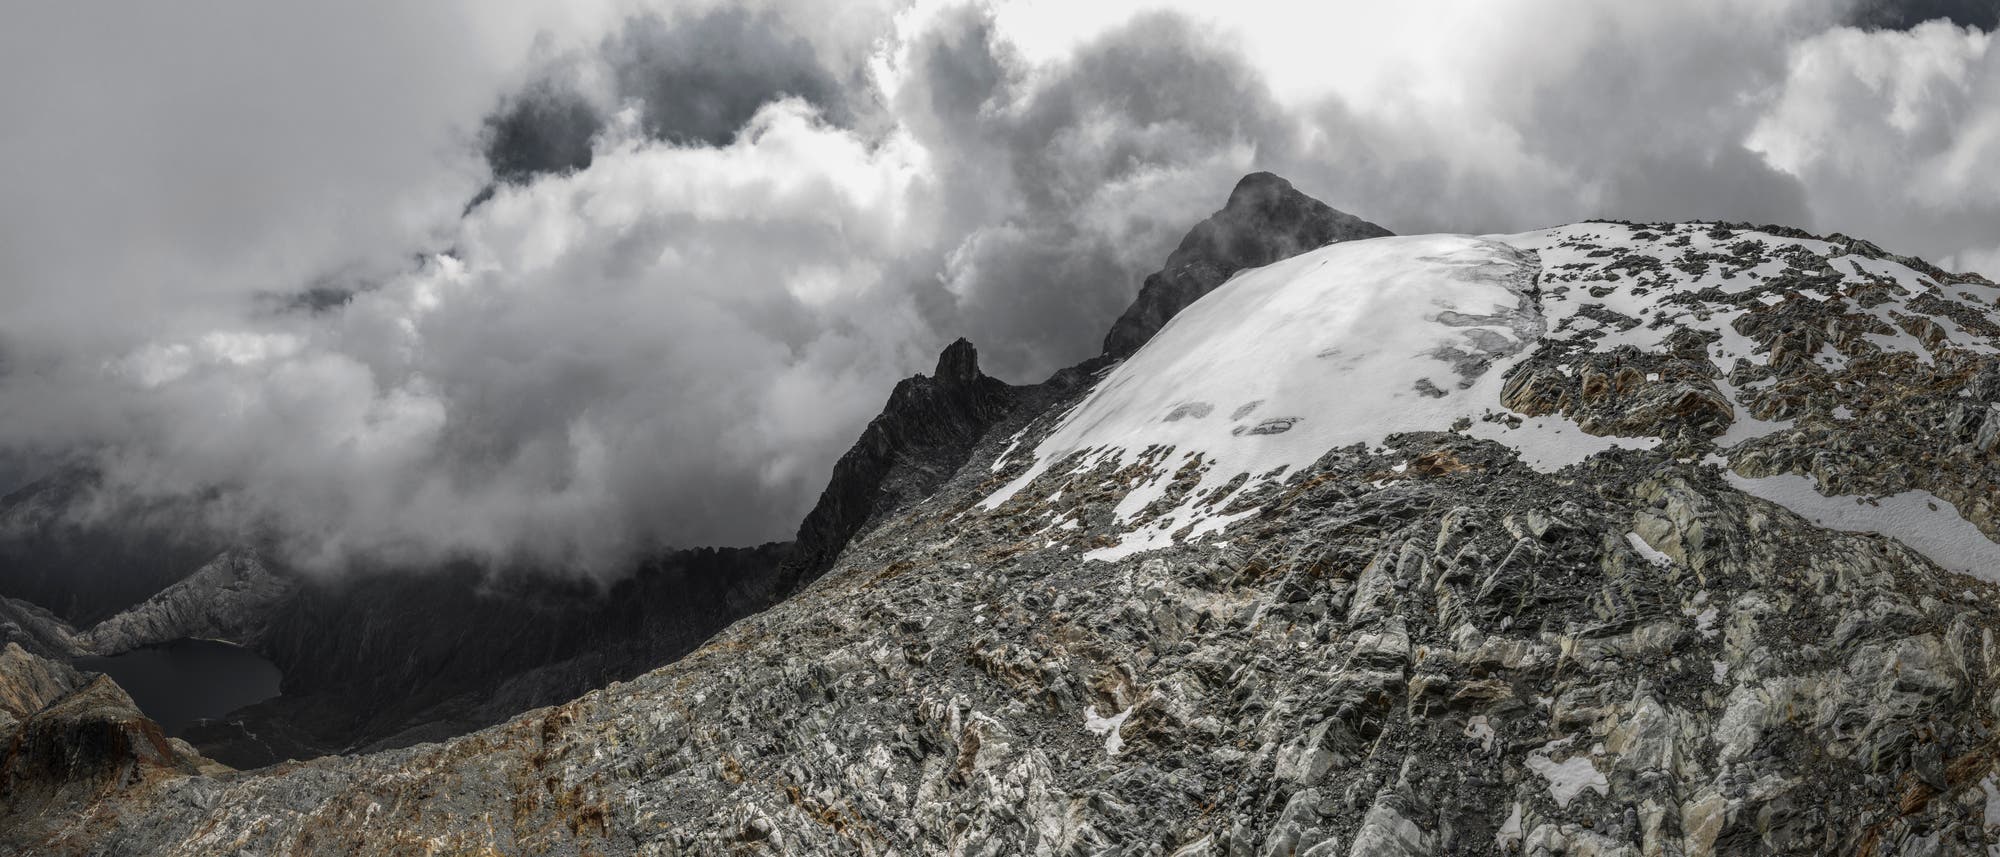 Archivbild des Humboldt-Gletschers in Venezuela, als dieser noch als Gletscher galt: eine kleine weiße Eisfläche in der rechten Bildmitte, umgeben von grauem Gestein. Im Hintergrund ein Berggipfel, der von weißen Wolken umgeben ist.